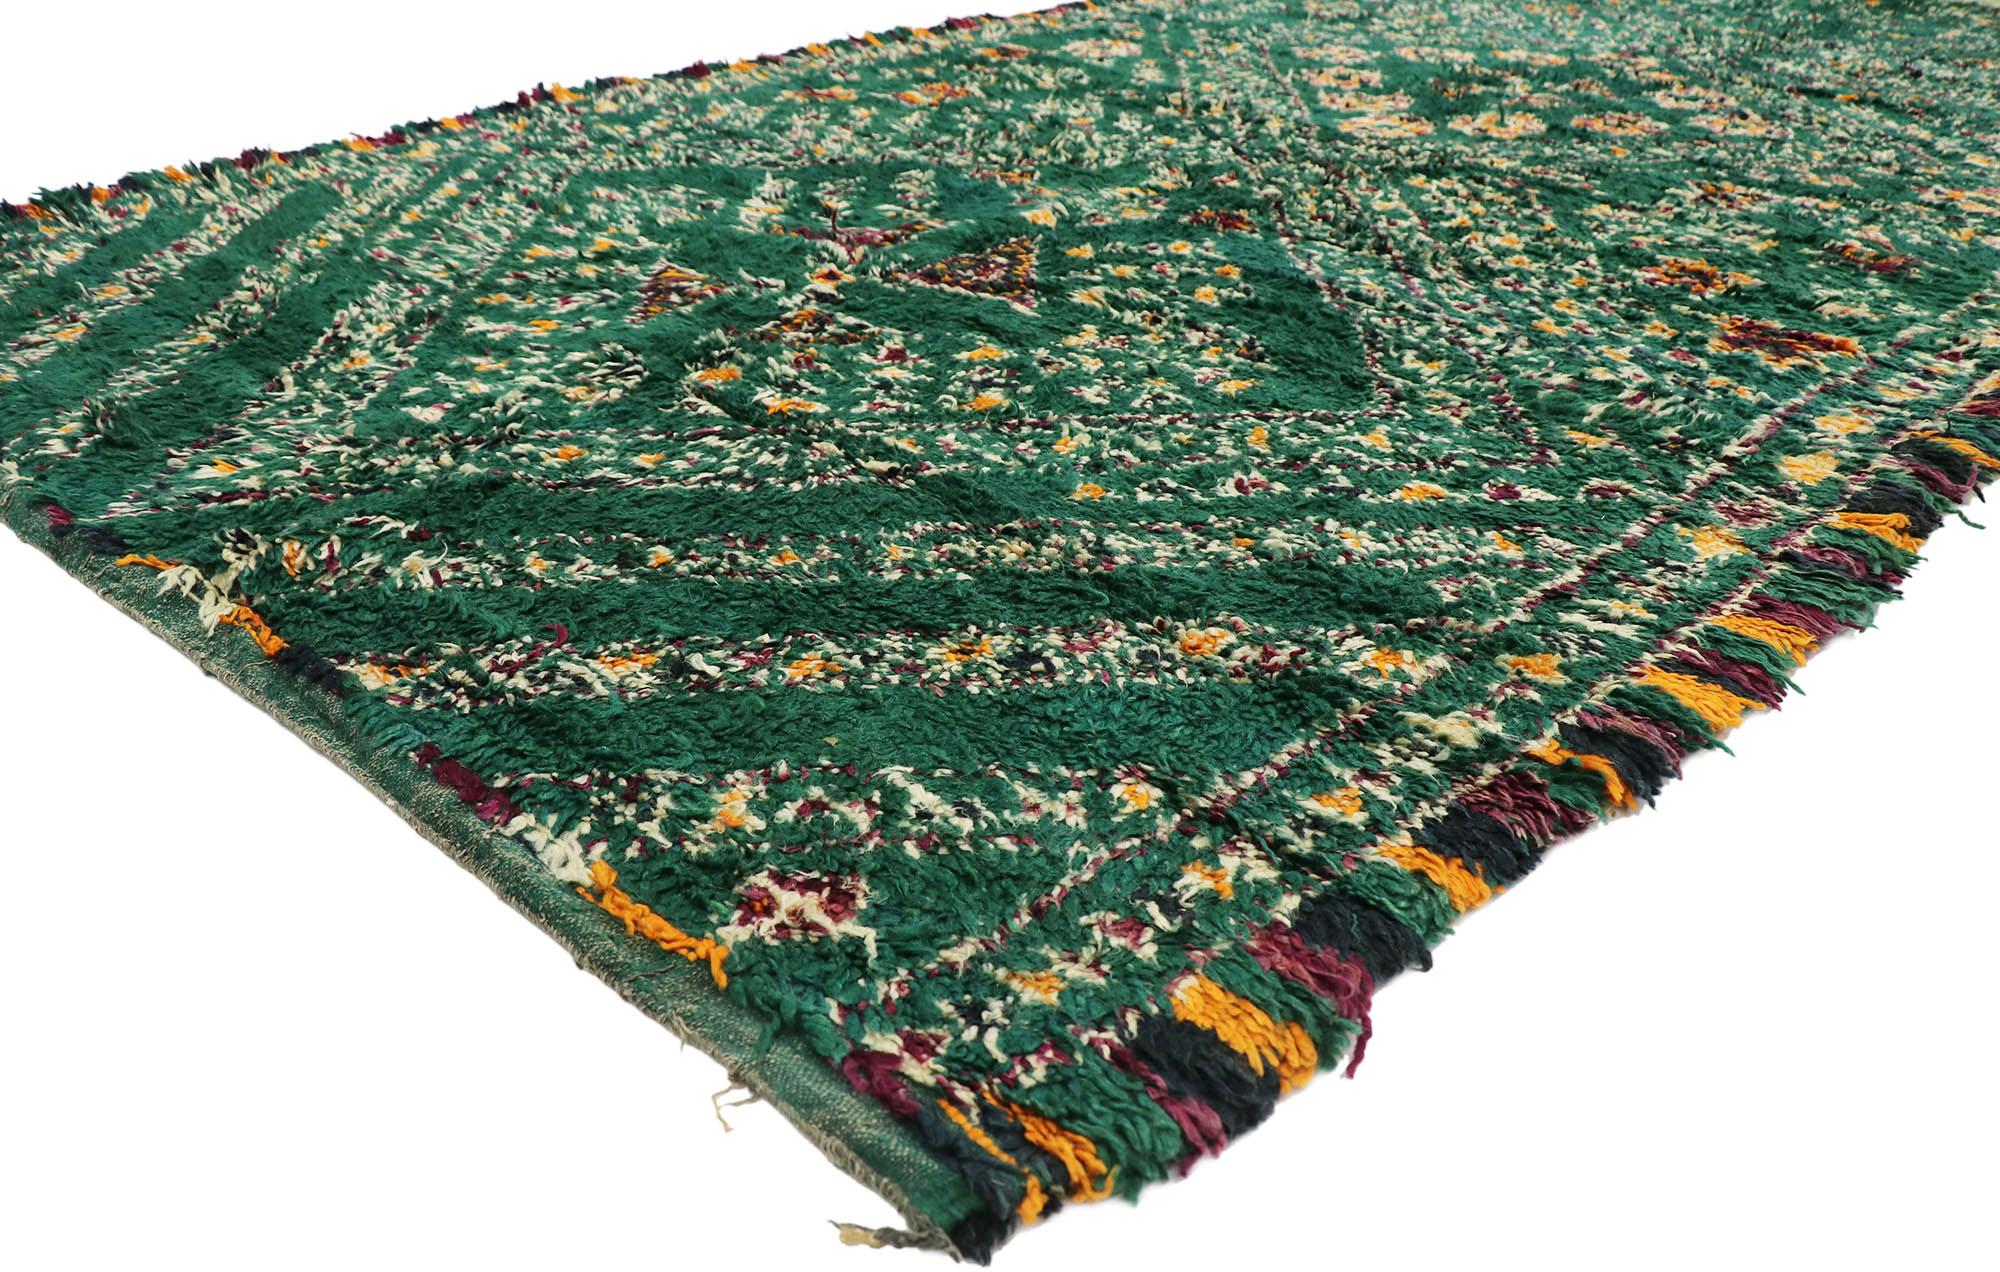 21322 Vintage grün Beni M'Guild marokkanischen Teppich mit Jungalow Stil 07'00 x 14'00. Mit seinem kühnen, ausdrucksstarken Design, seinen unglaublichen Details und seiner Textur ist dieser handgeknüpfte grüne Beni M'Guild Marokko-Teppich aus Wolle